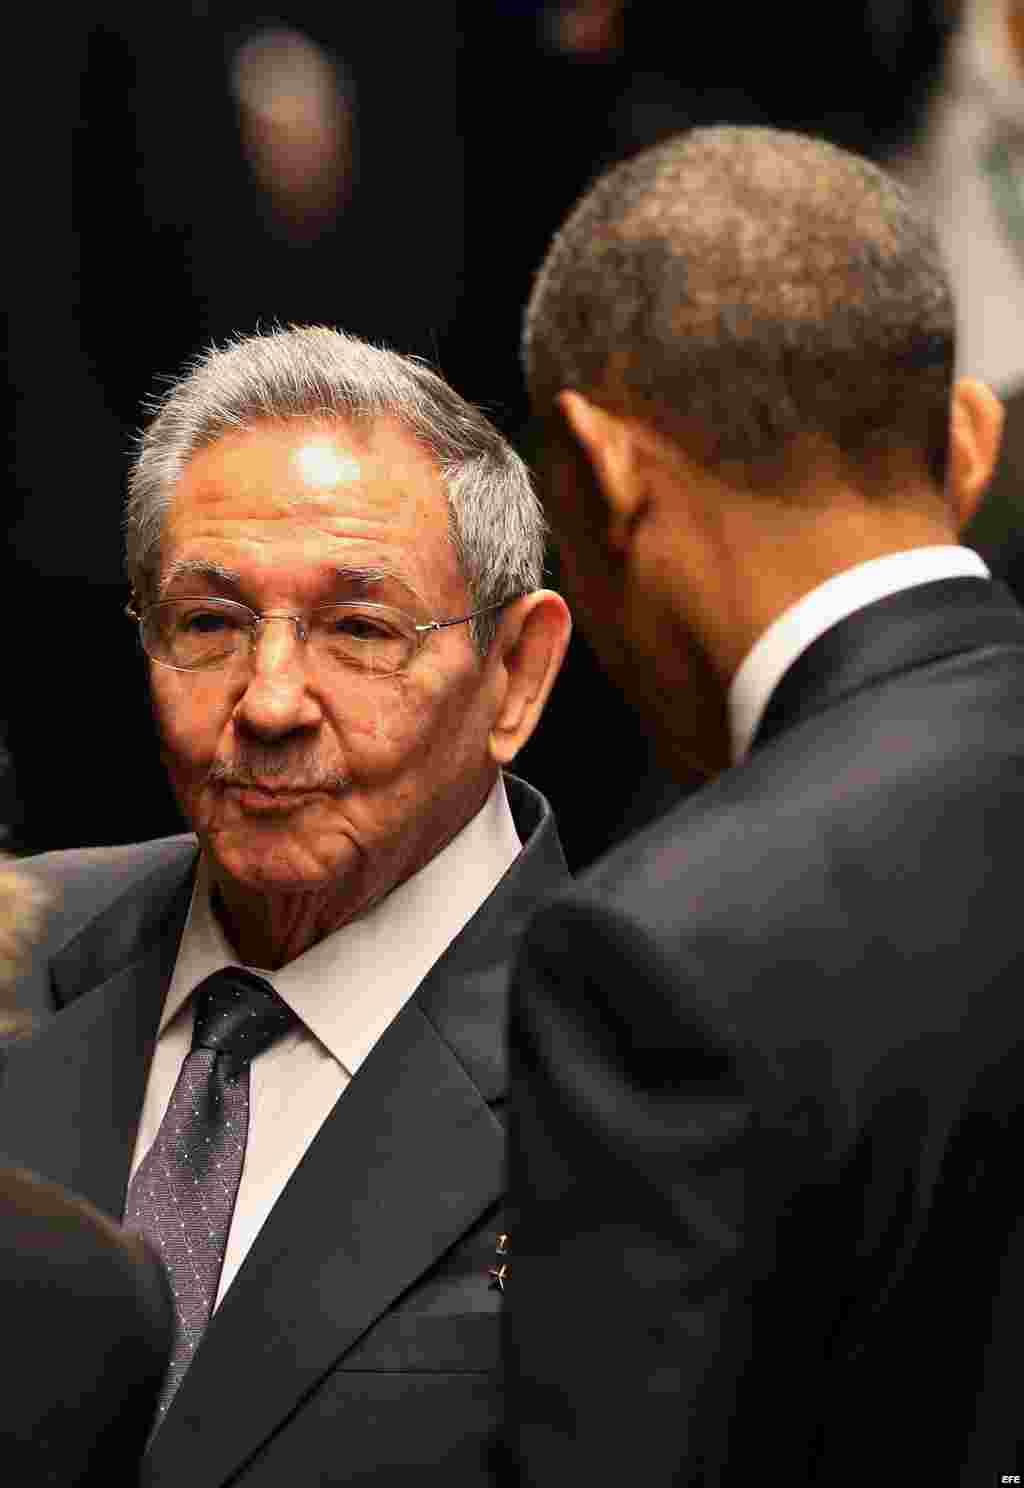 Raúl Castro (c) recibe al presidente de Estados Unidos Barack Obama (d) hoy, lunes 21 de marzo de 2016, en la ceremonia oficial de recibimiento en el Palacio de la Revolución en La Habana (Cuba).